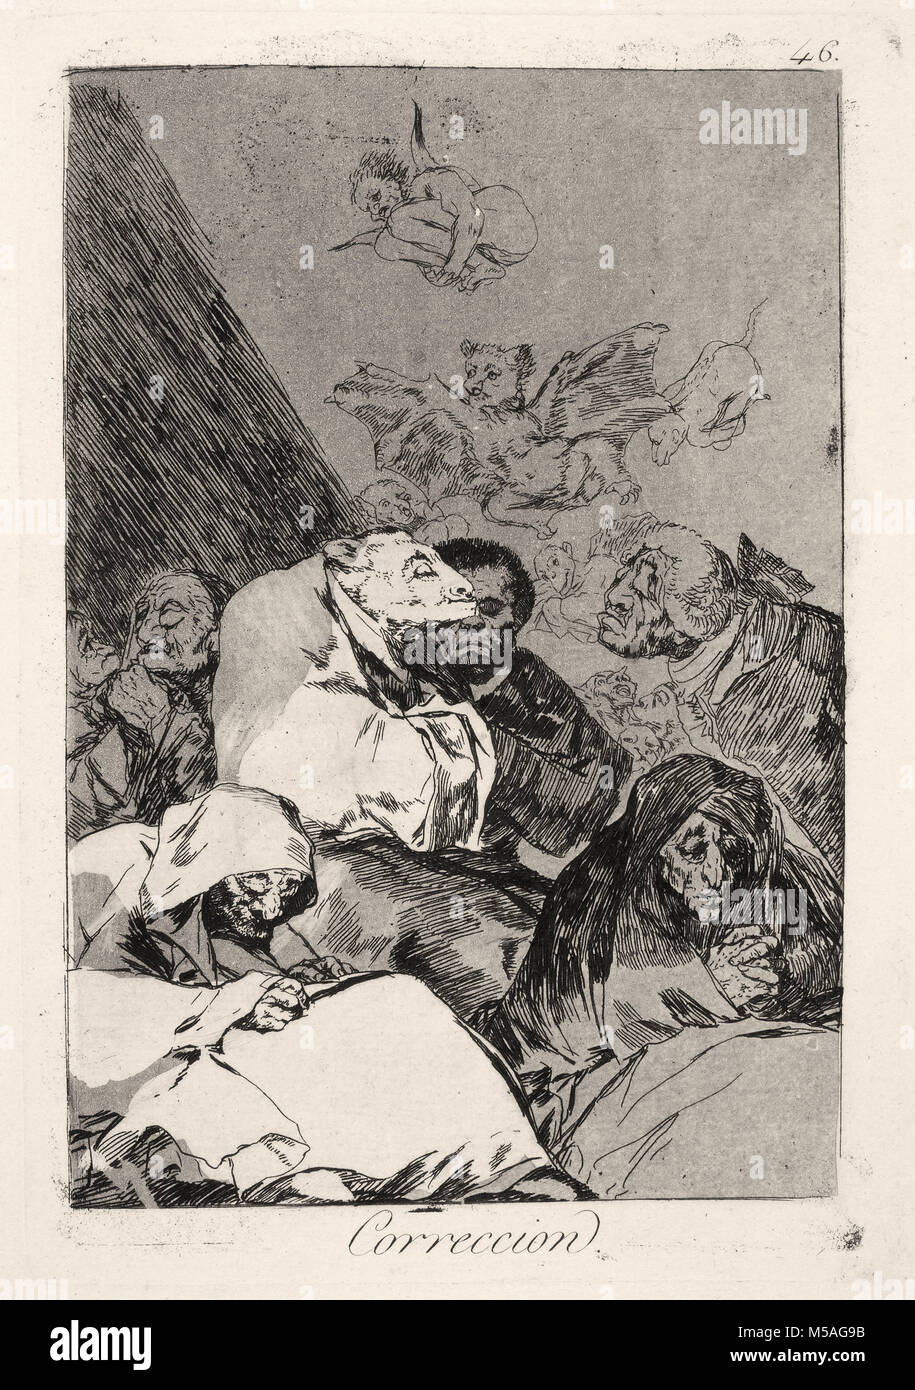 Francisco de Goya - Los Caprichos - Nr. 46 - Correccion Stockfoto